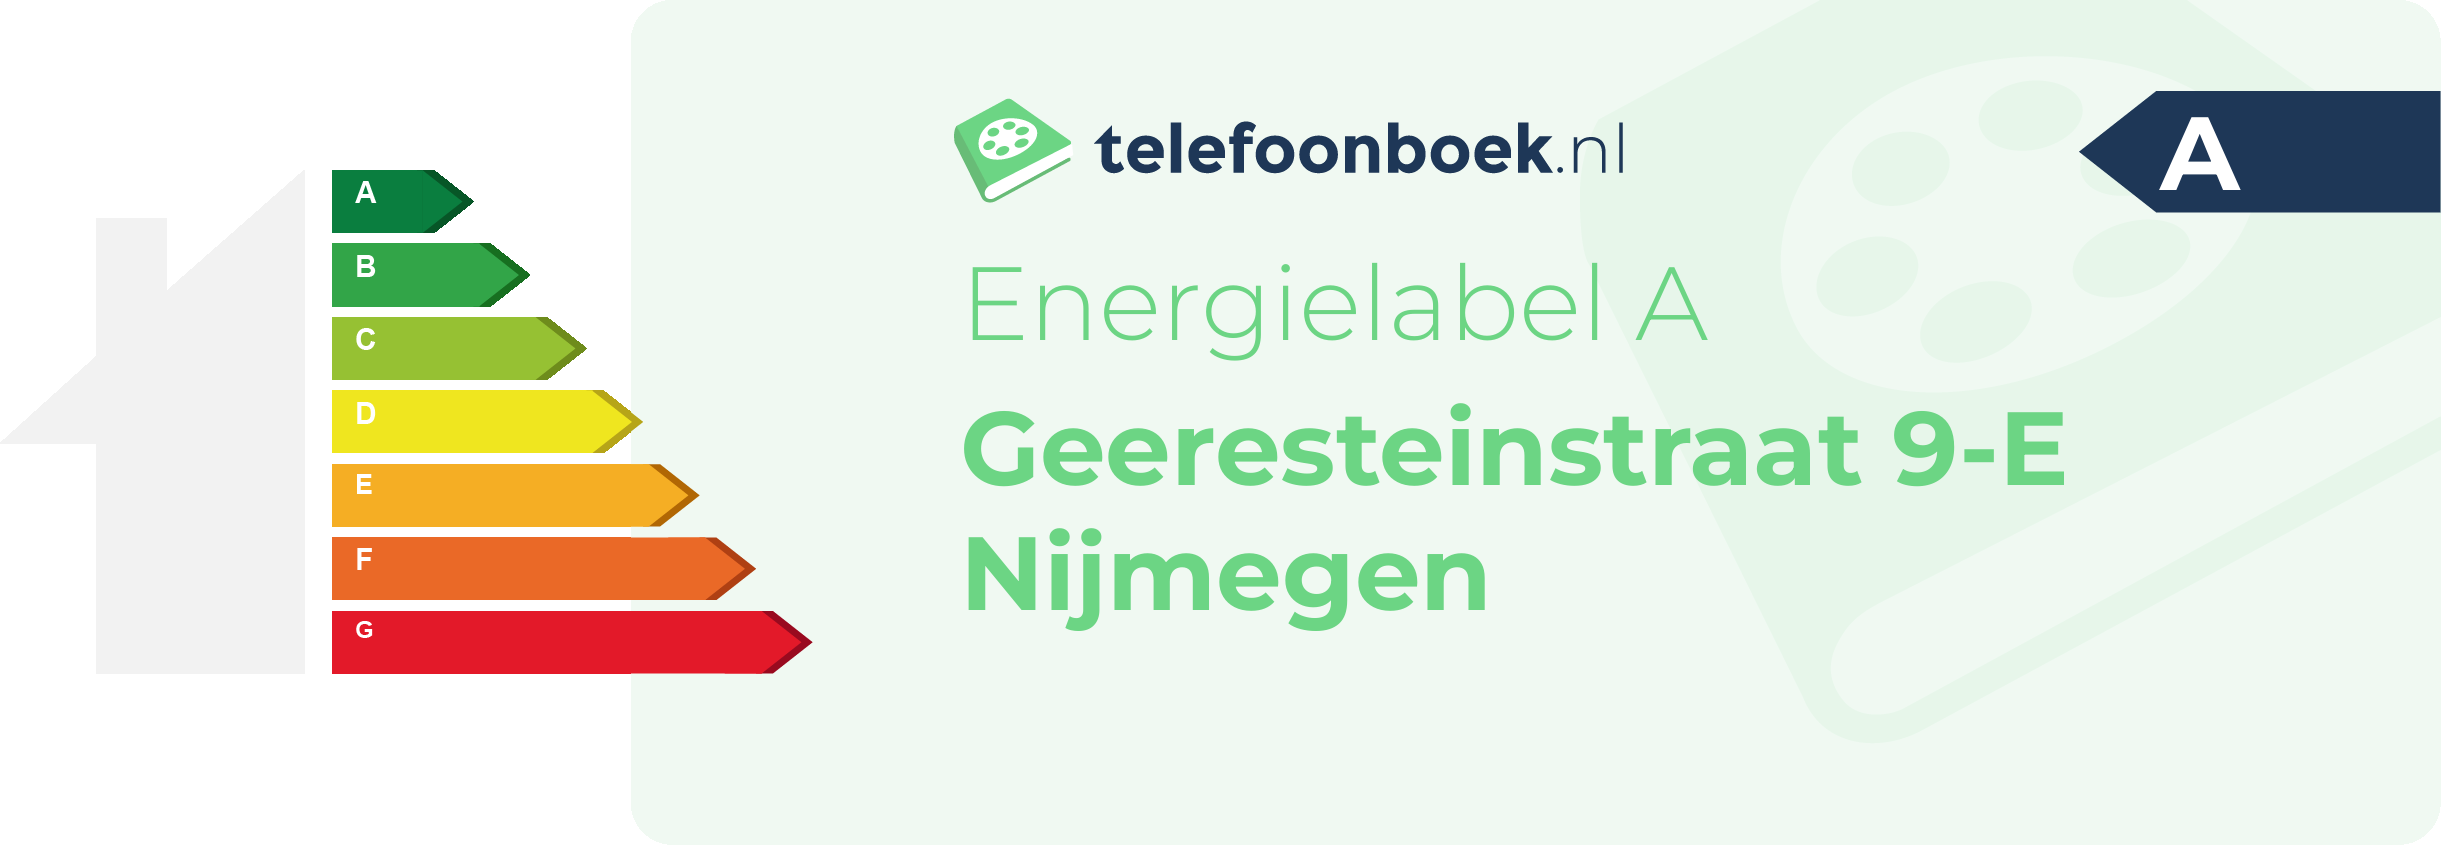 Energielabel Geeresteinstraat 9-E Nijmegen